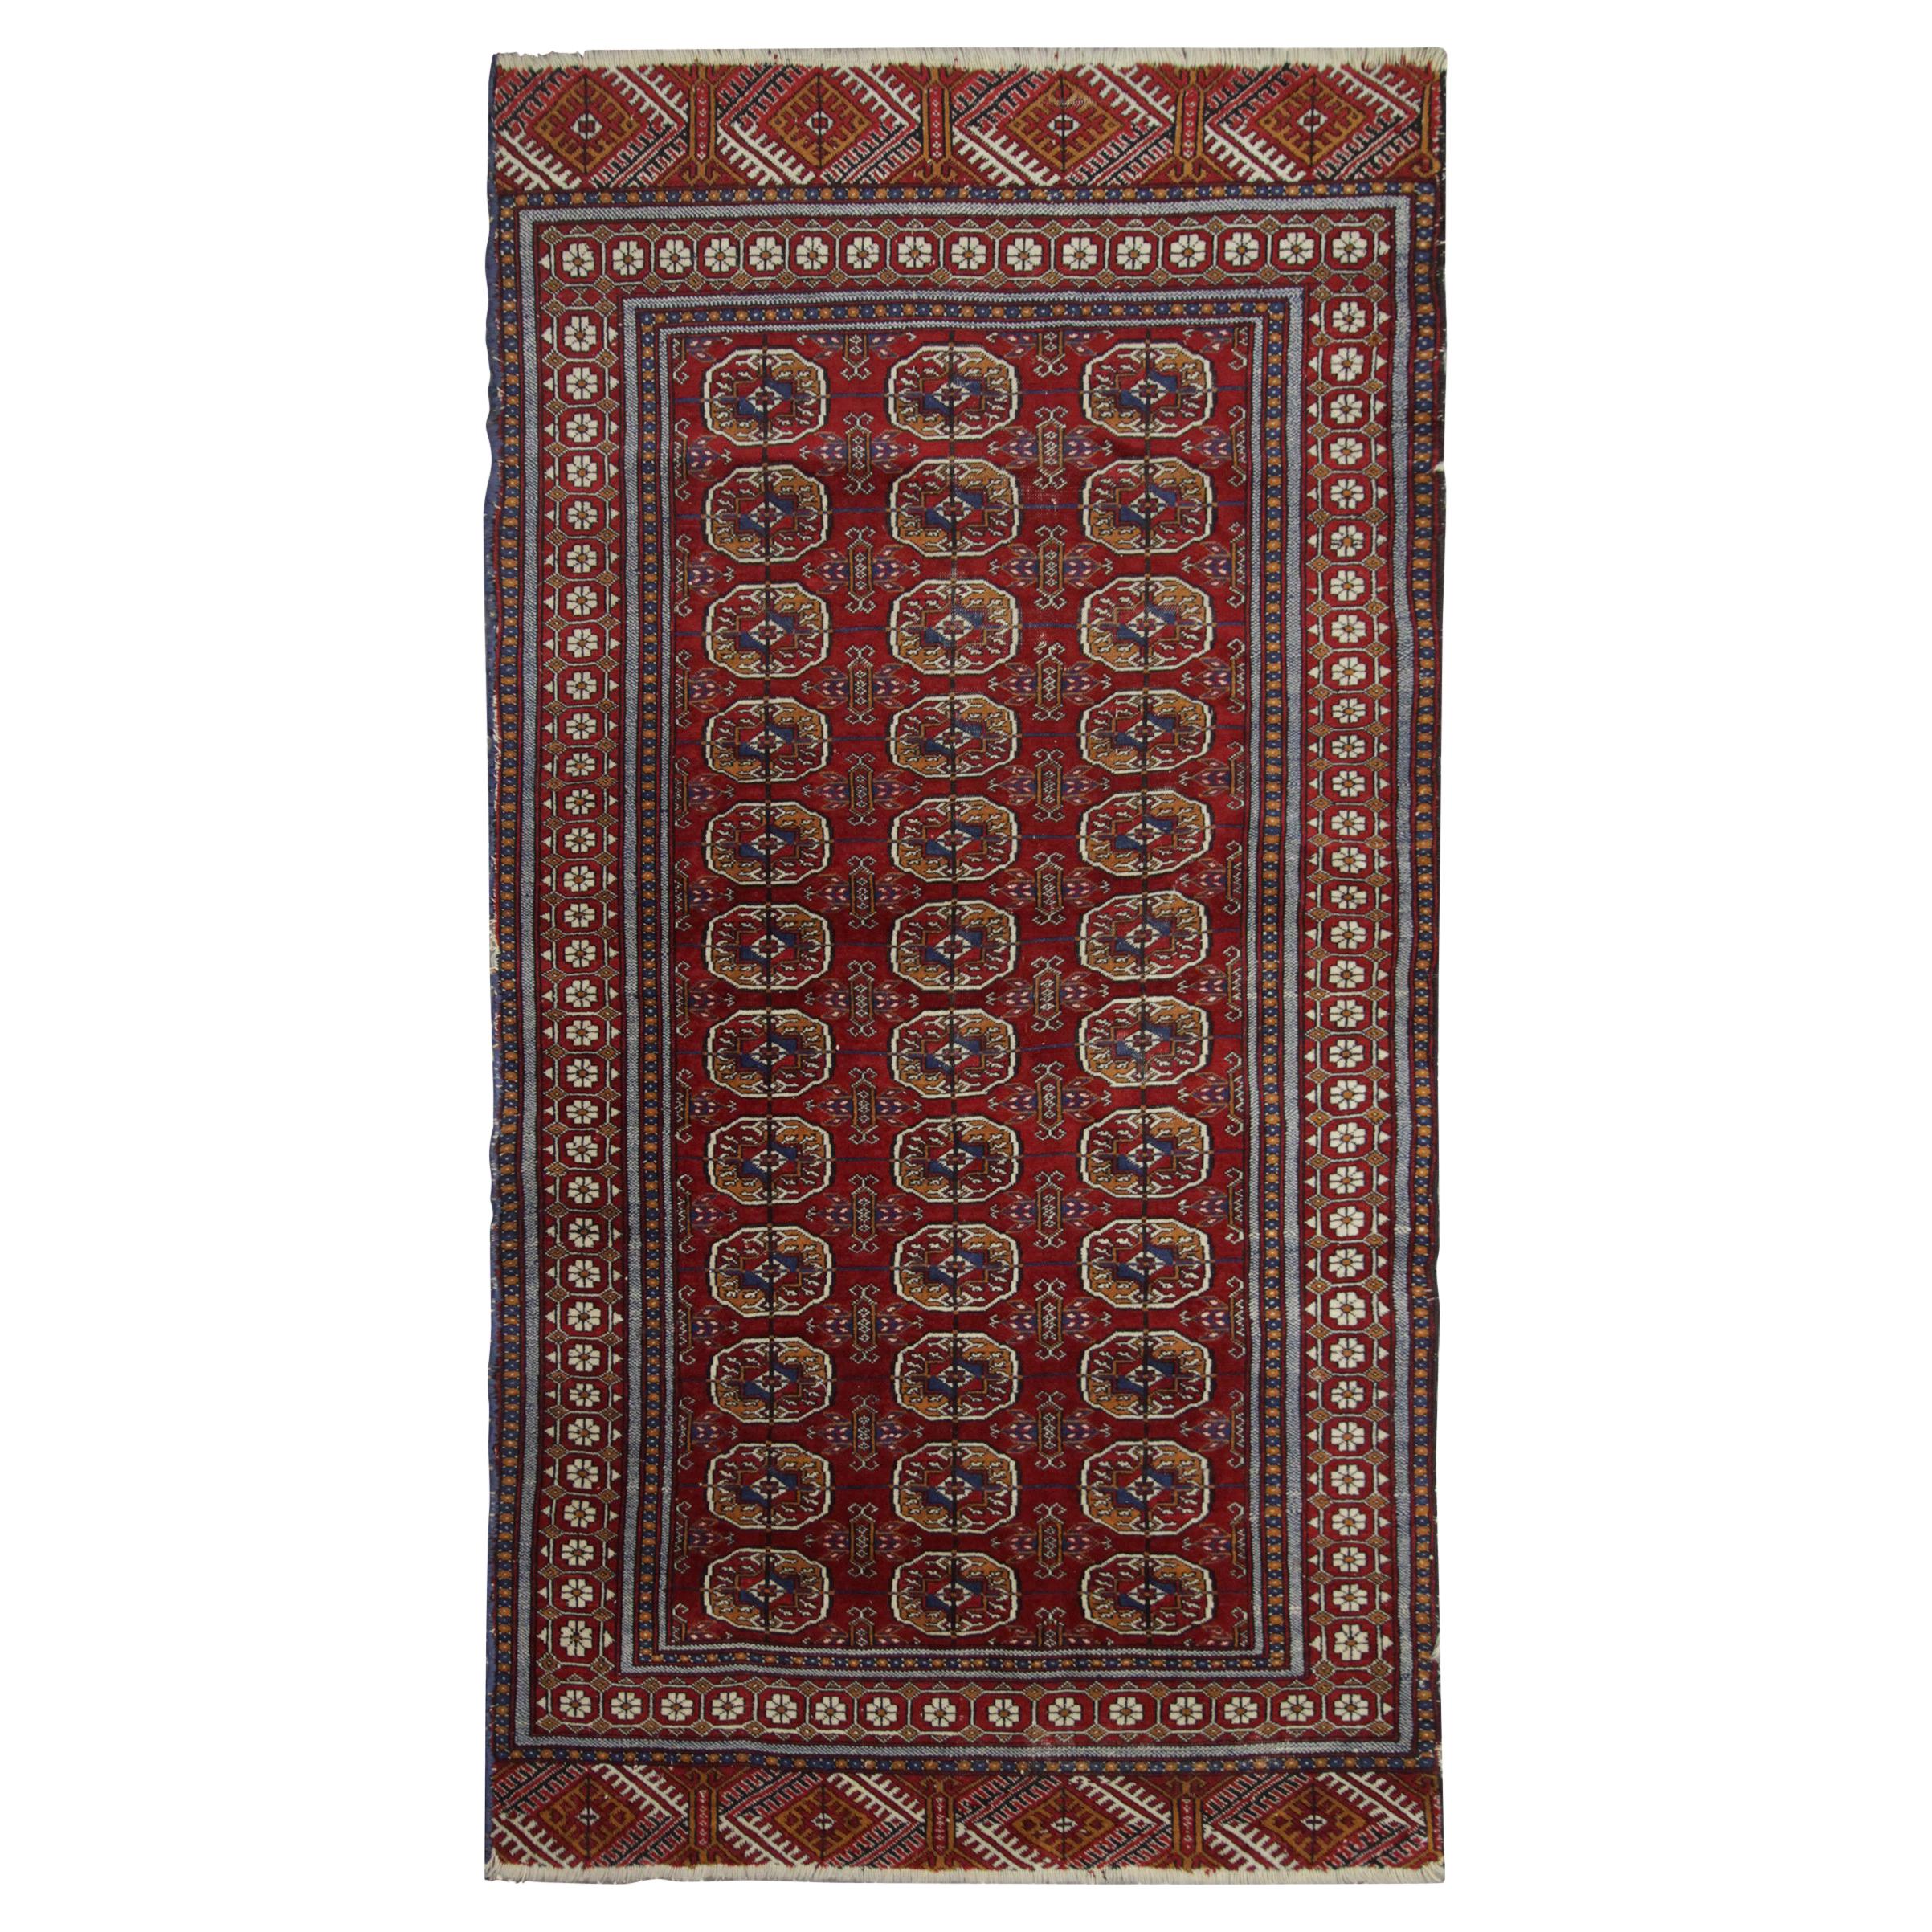 Antiker Bukhara Teppich, handgewebter orientalischer Teppich aus roter Wolle